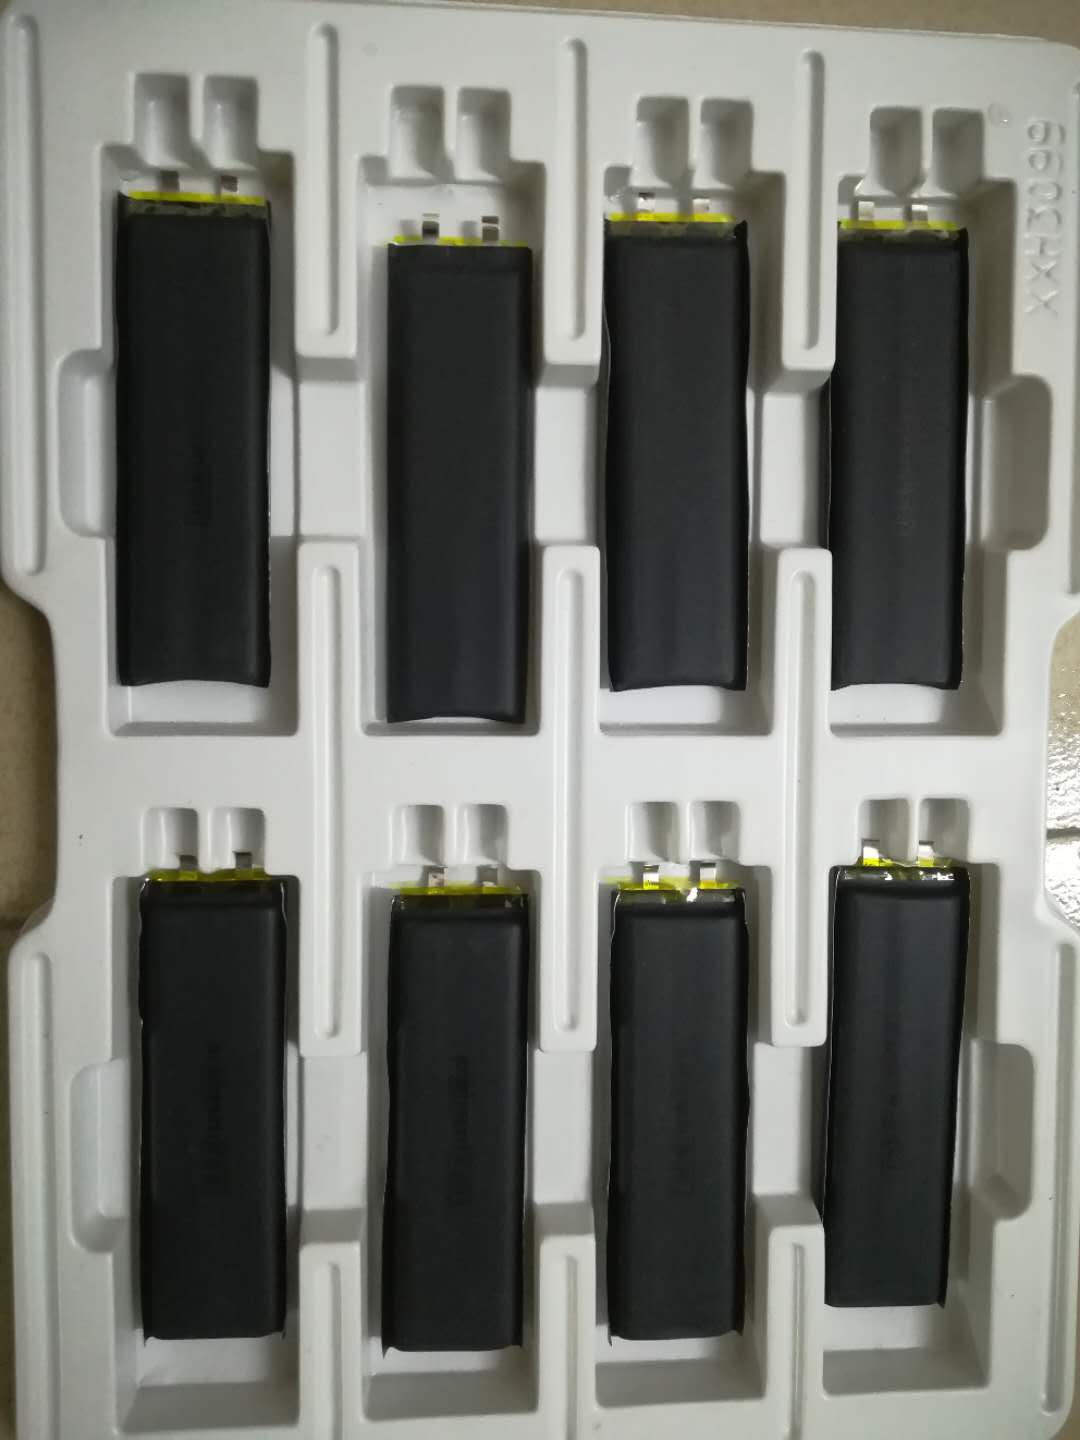 回收废旧电池 收购磷酸铁锂电池 应急电源回收价位